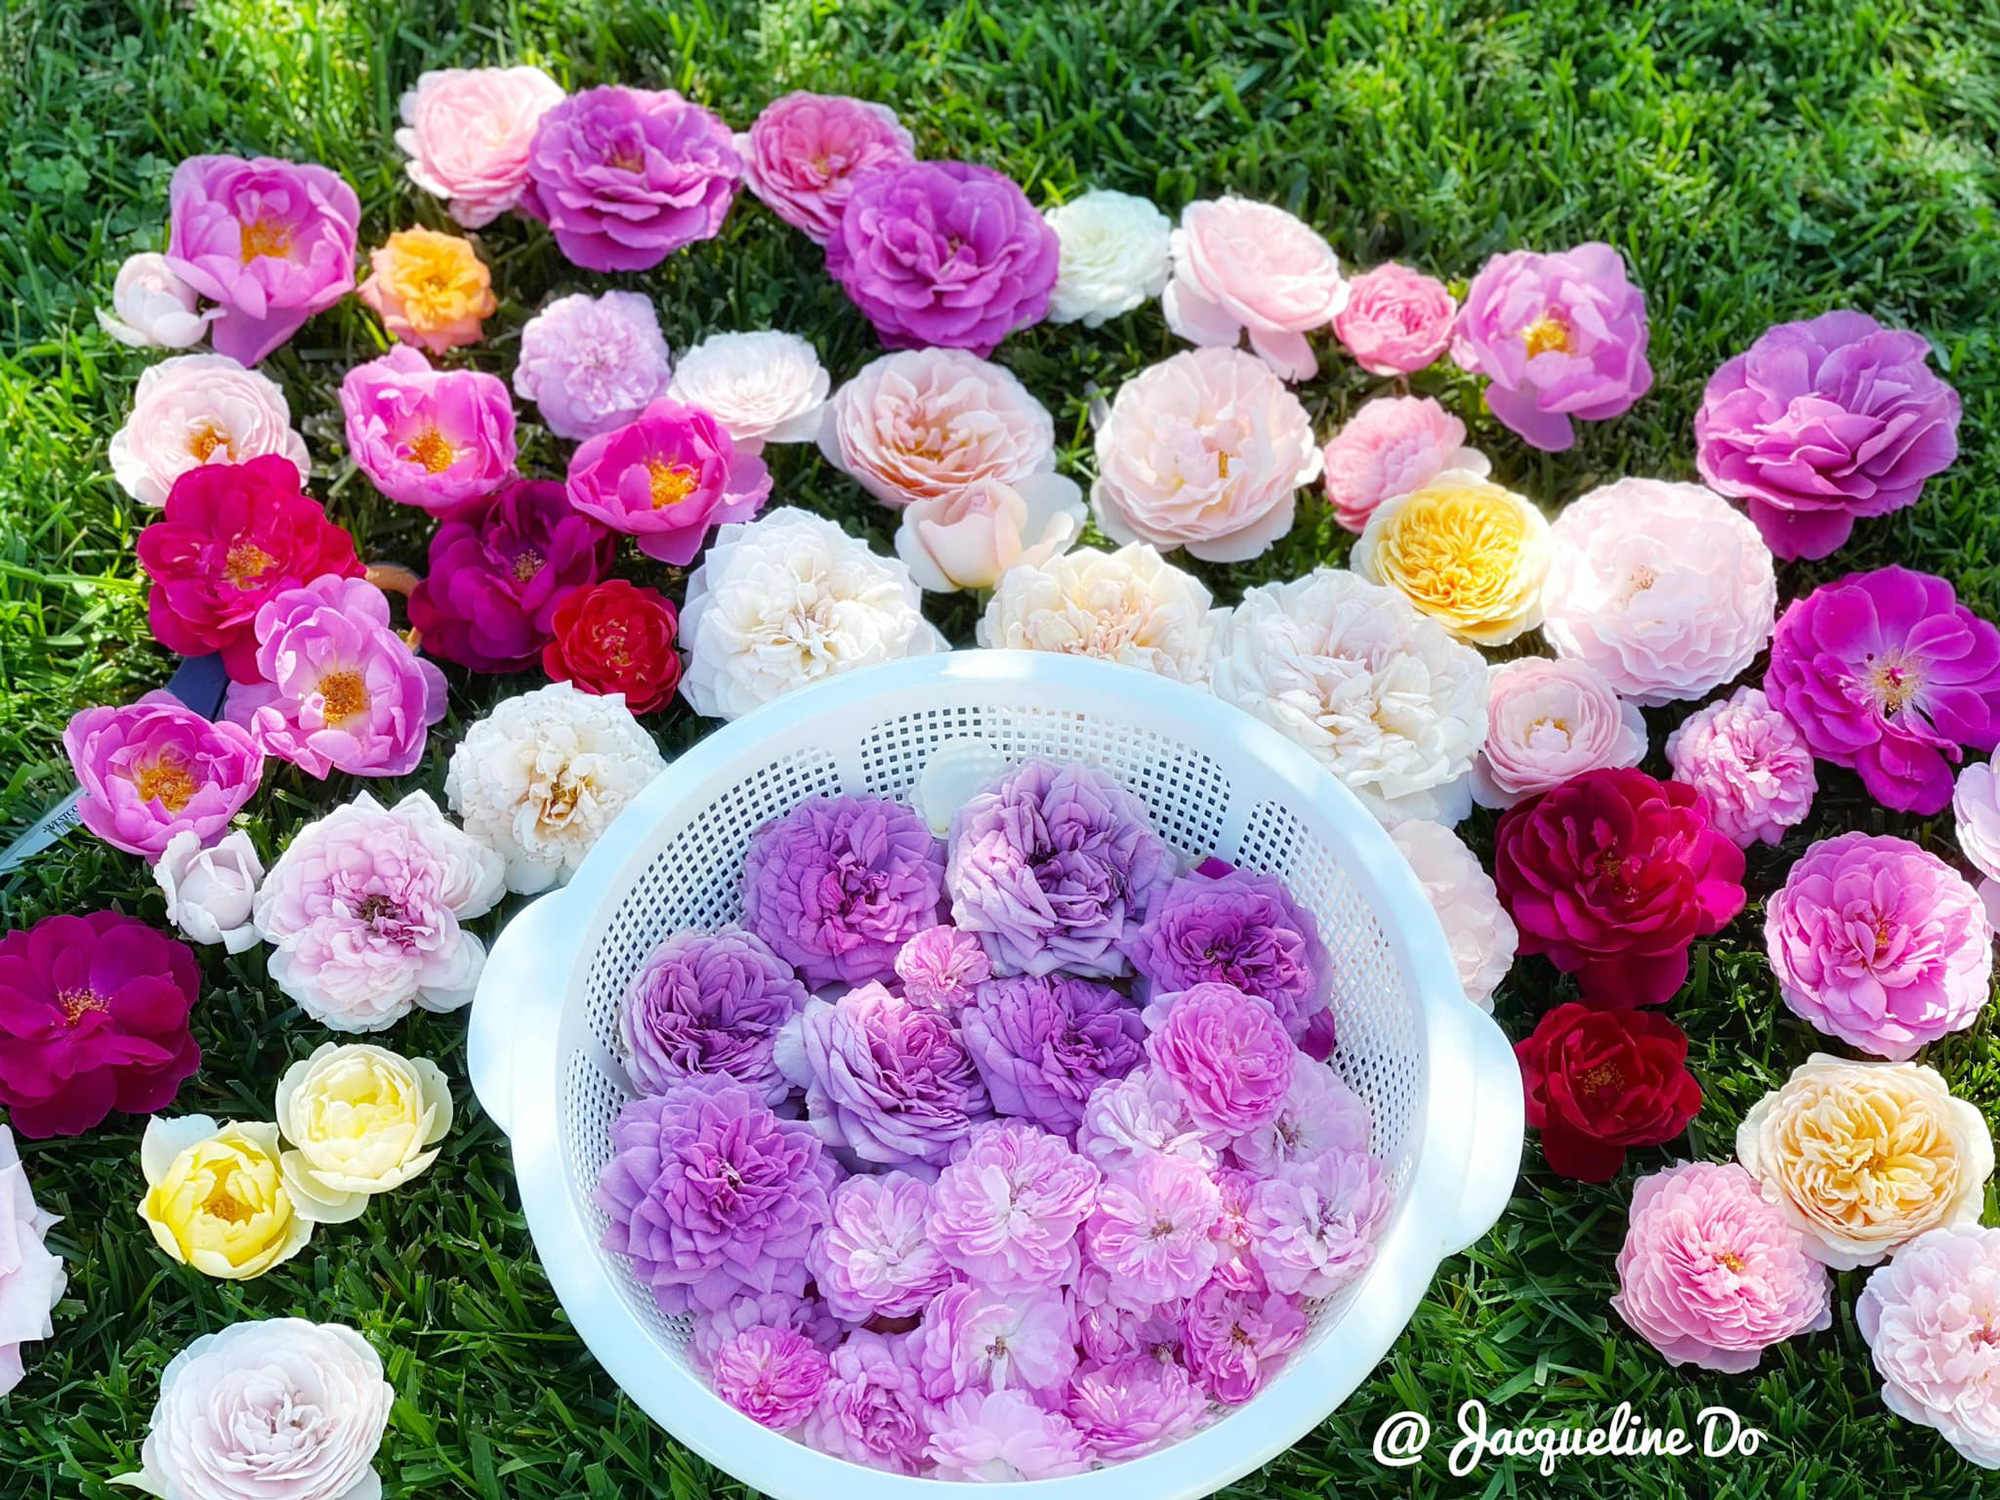 Ngẩn ngơ ngắm vườn hồng đẹp như cổ tích của mẹ Việt ở Mỹ - Ảnh 10.